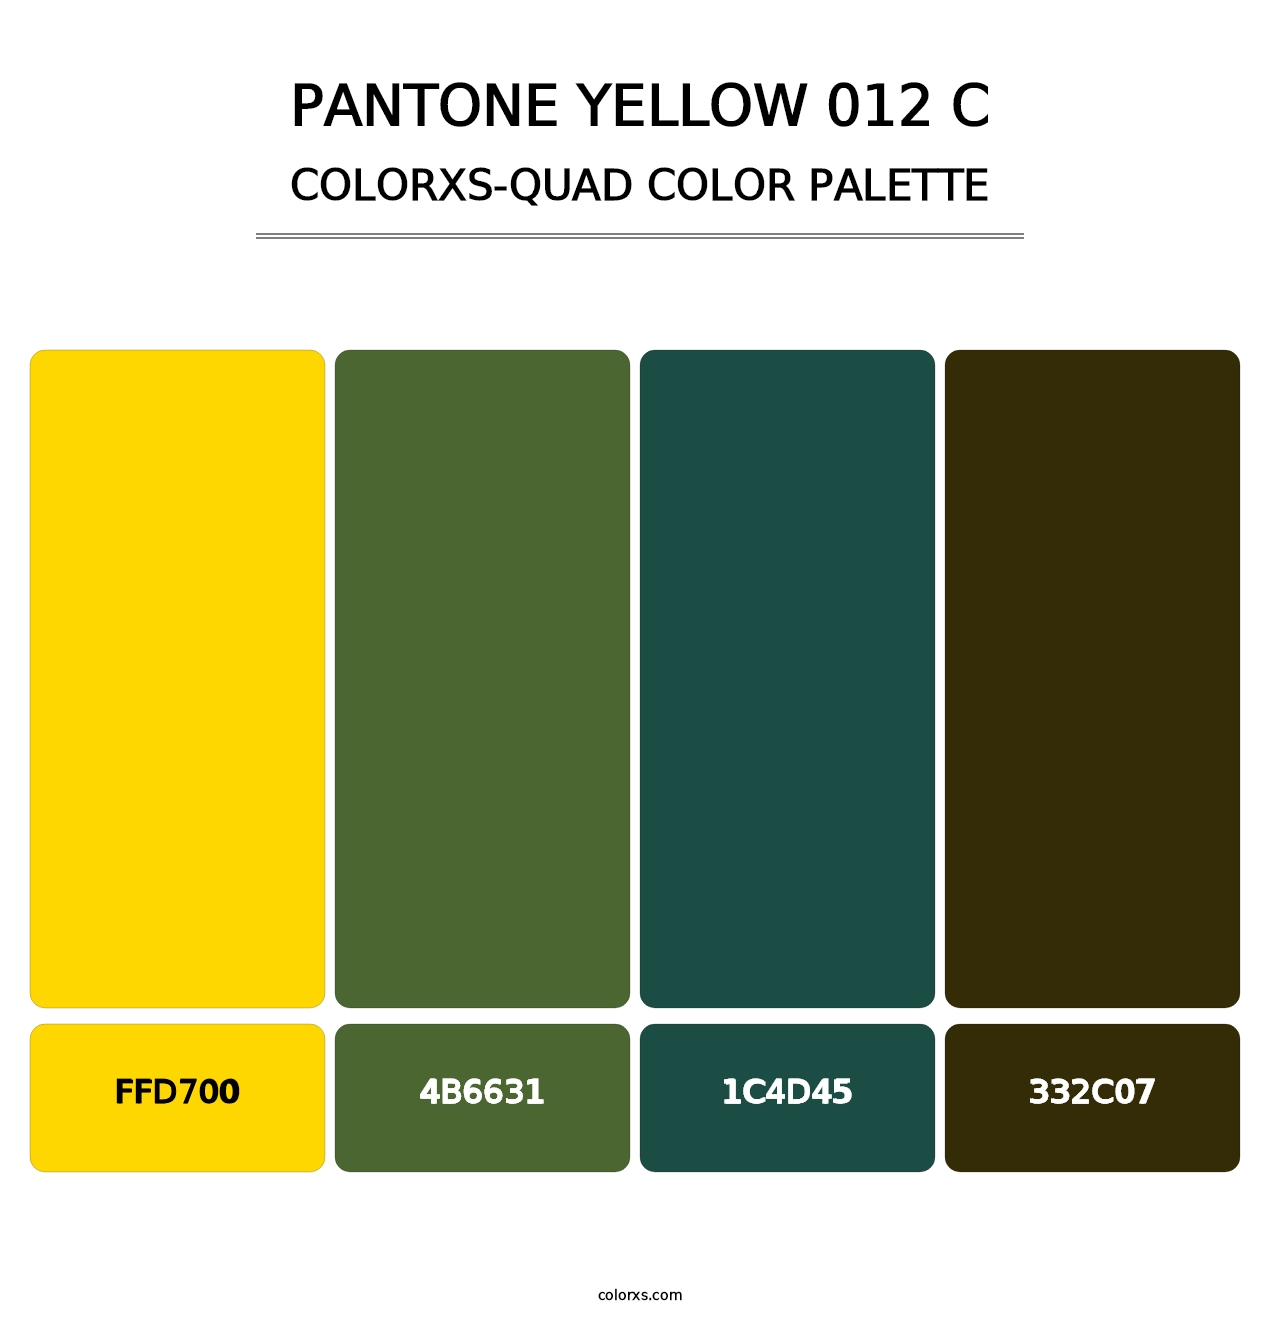 PANTONE Yellow 012 C - Colorxs Quad Palette